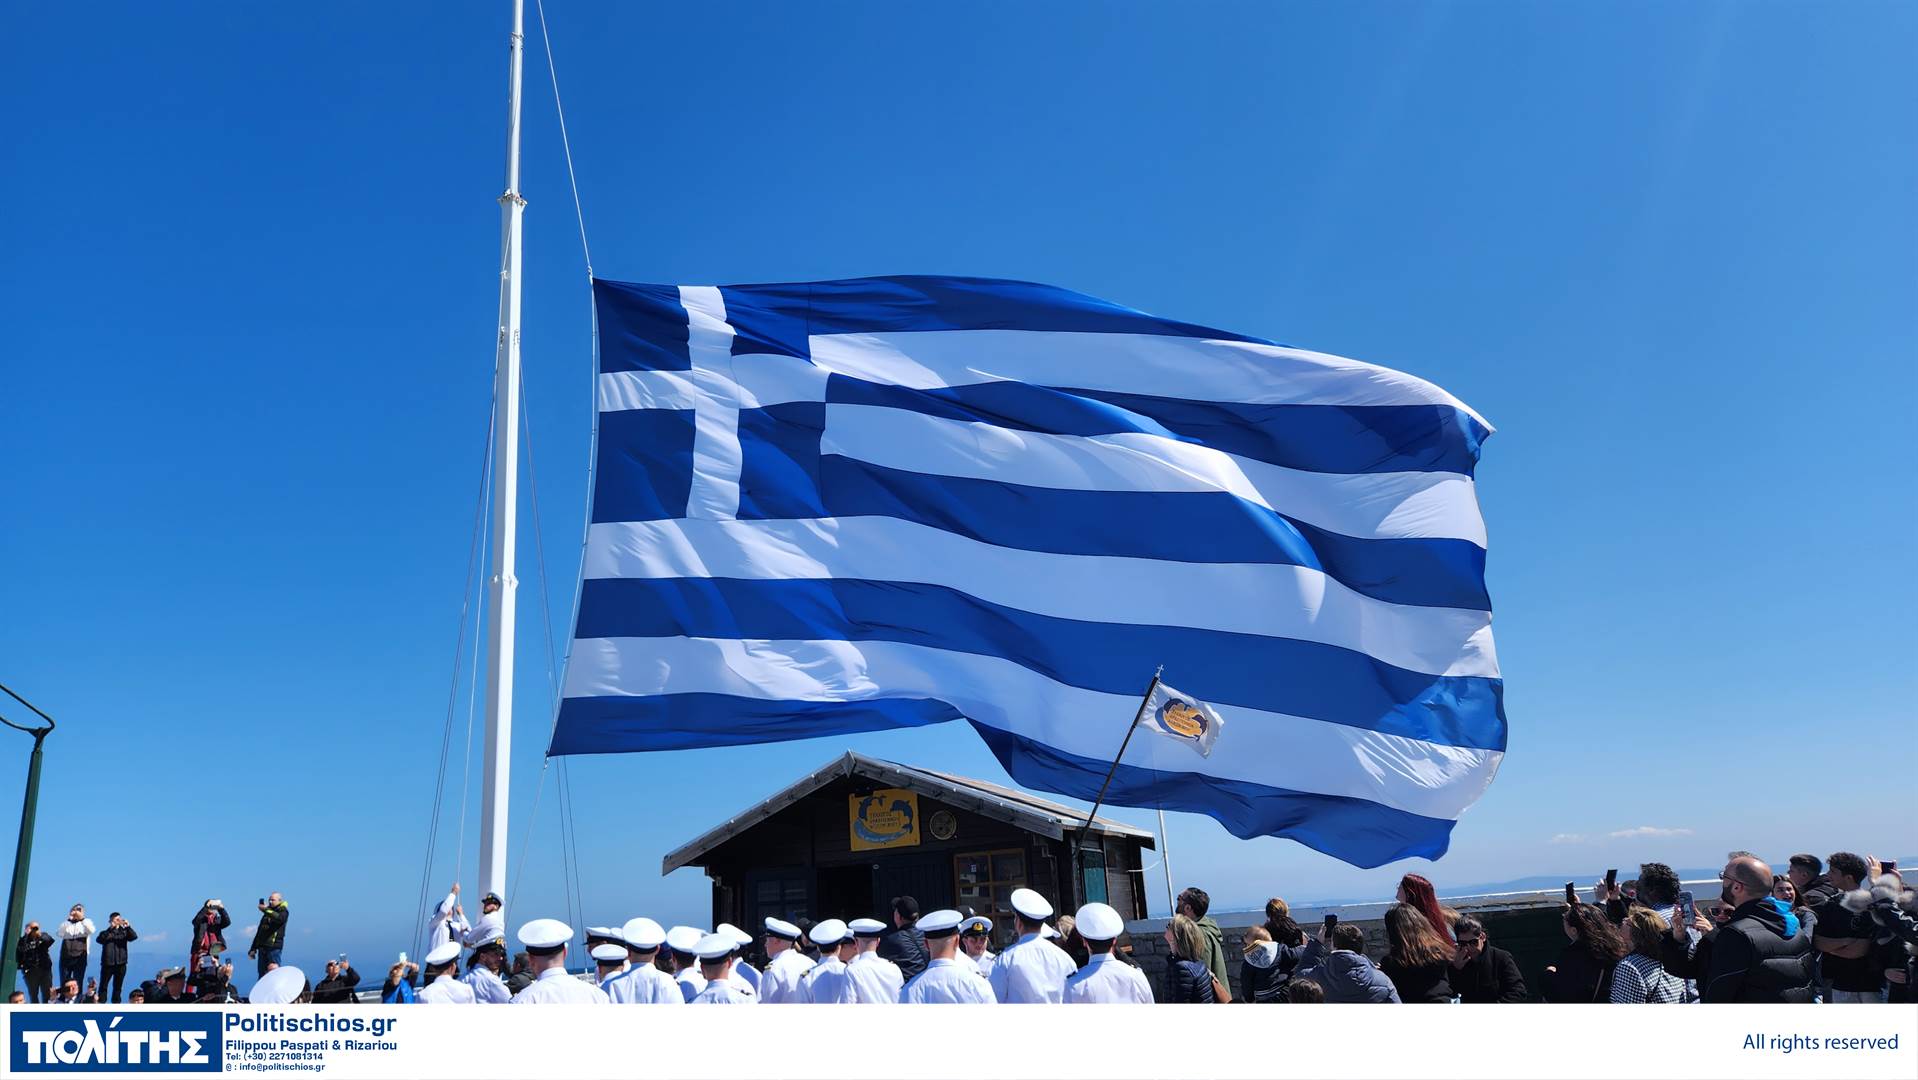 Χίος: Οι εντυπωσιακές εικόνες από την τεράστια ελληνική σημαία, που υψώθηκε στο λιμάνι του νησιού